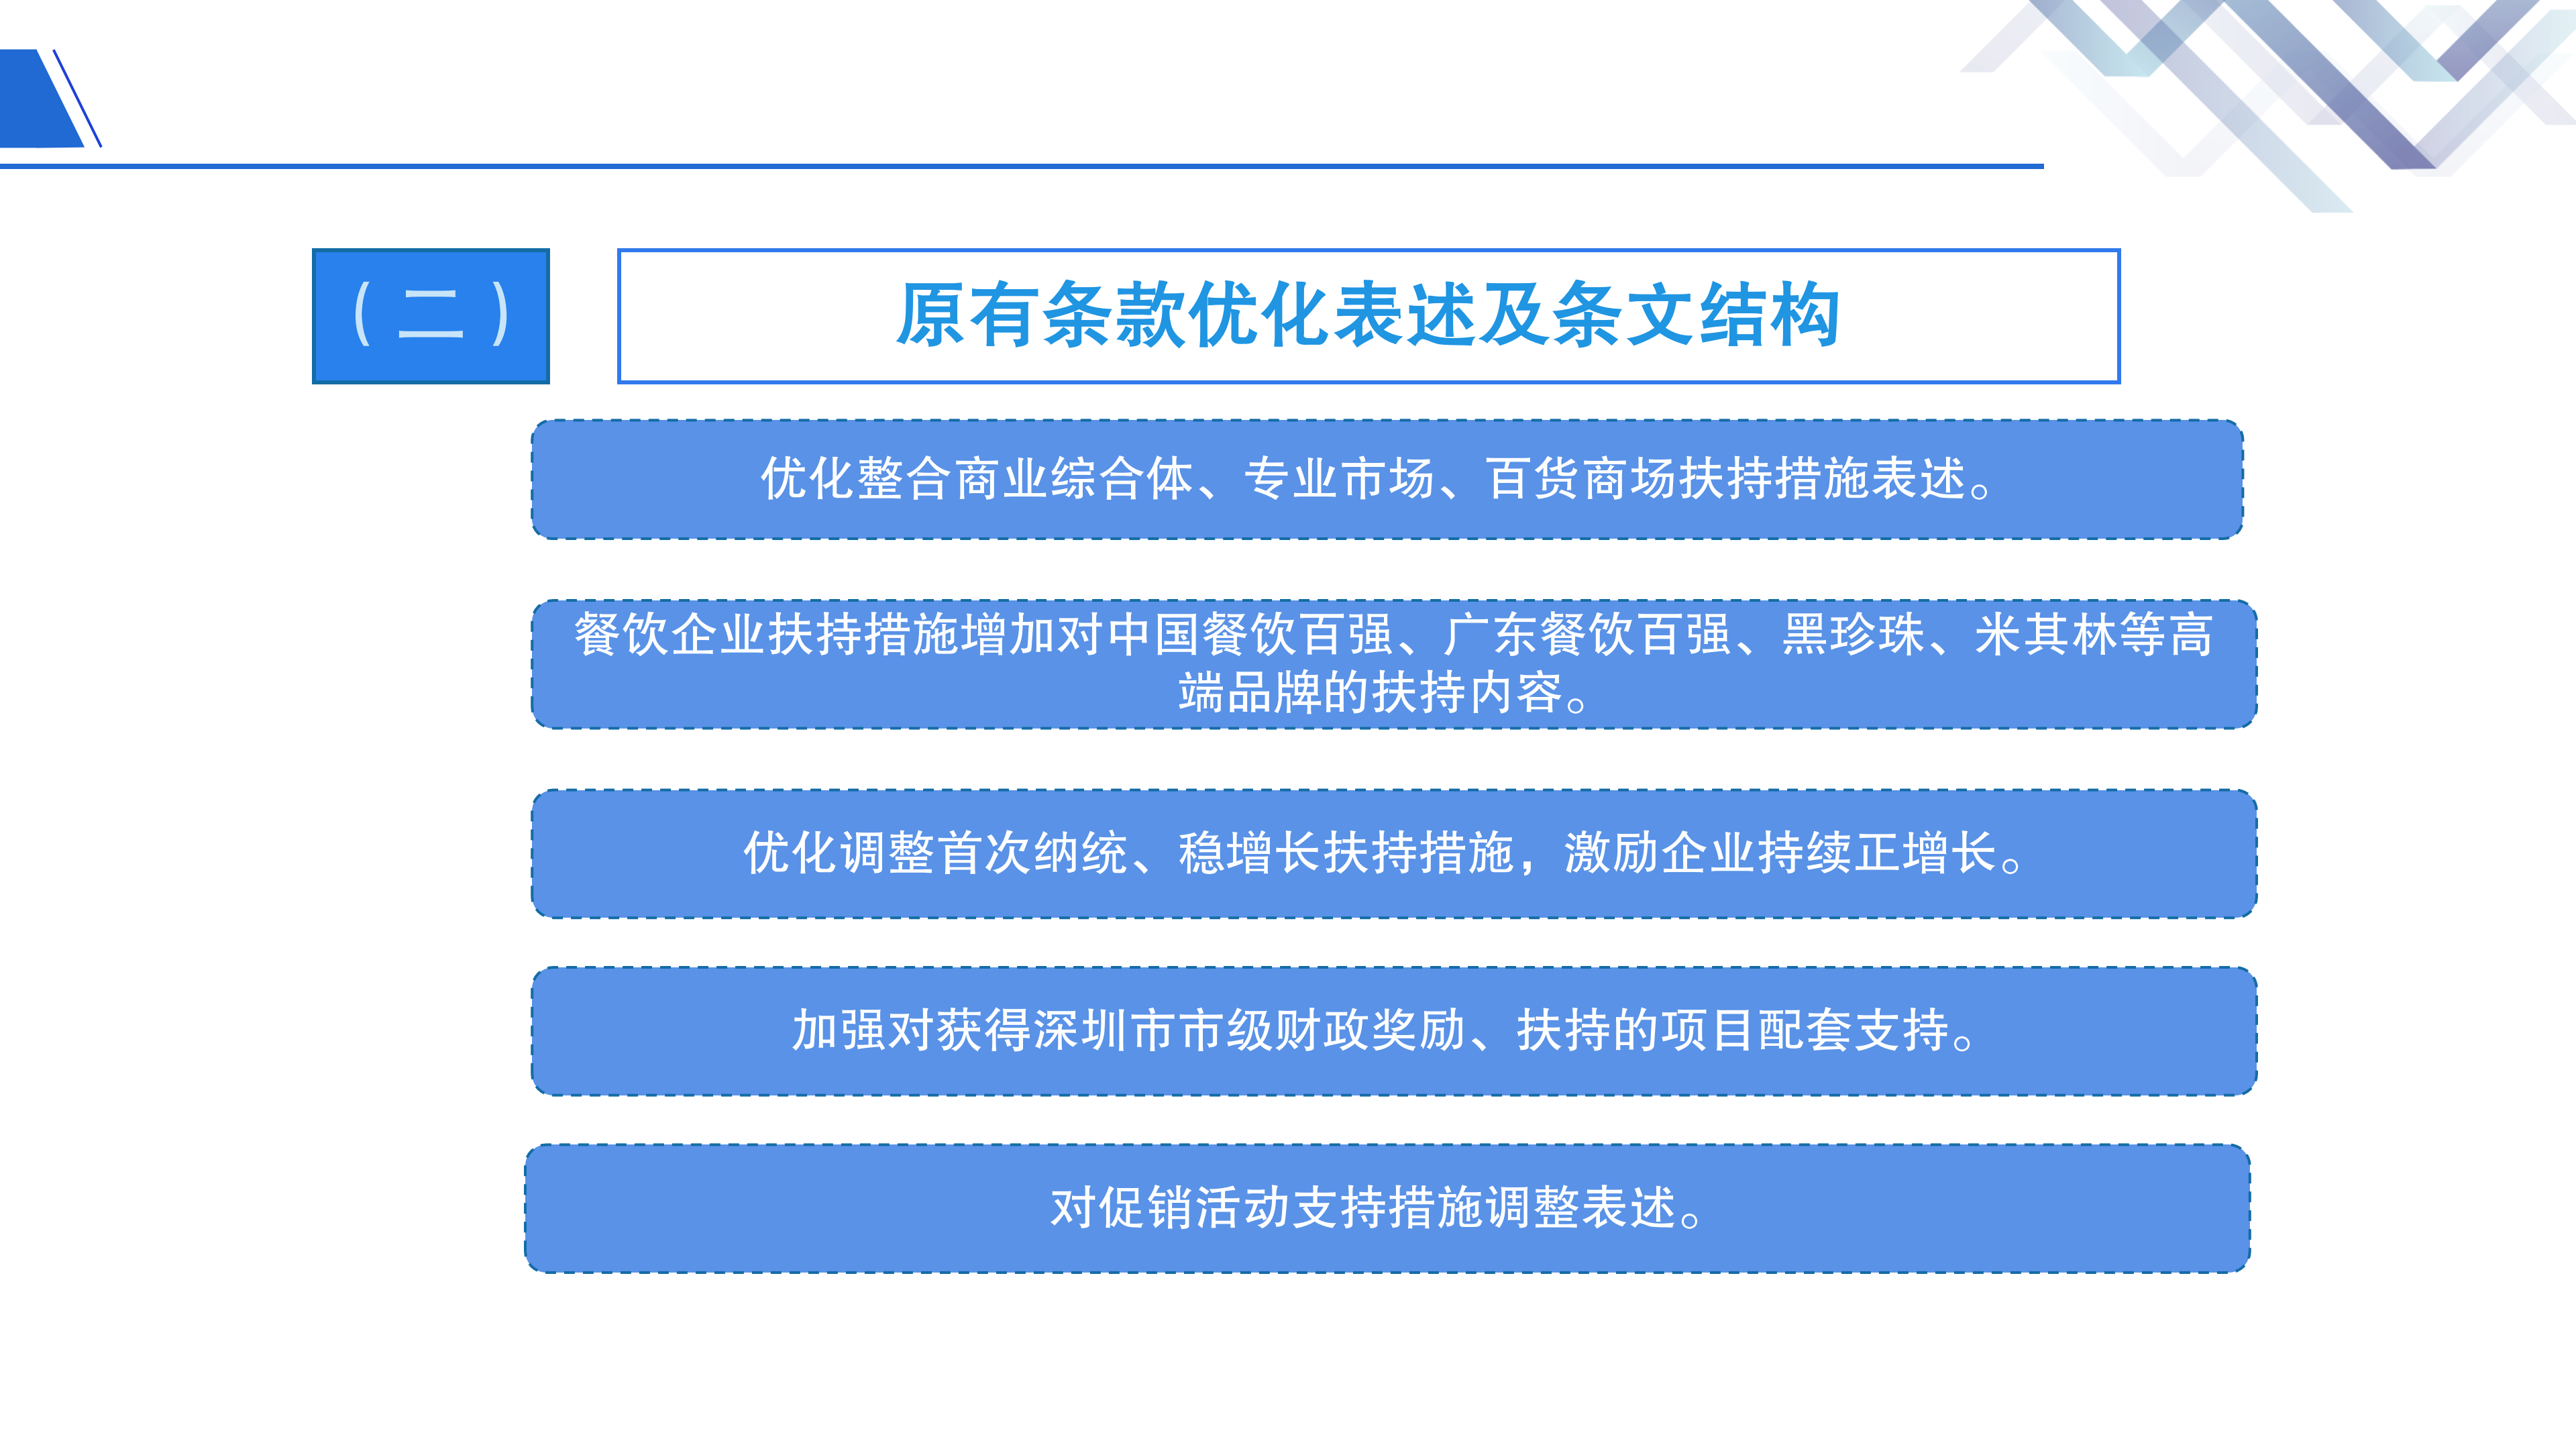 深圳市大鹏新区关于加快商贸金融业发展的若干措施》政策解读_07.png